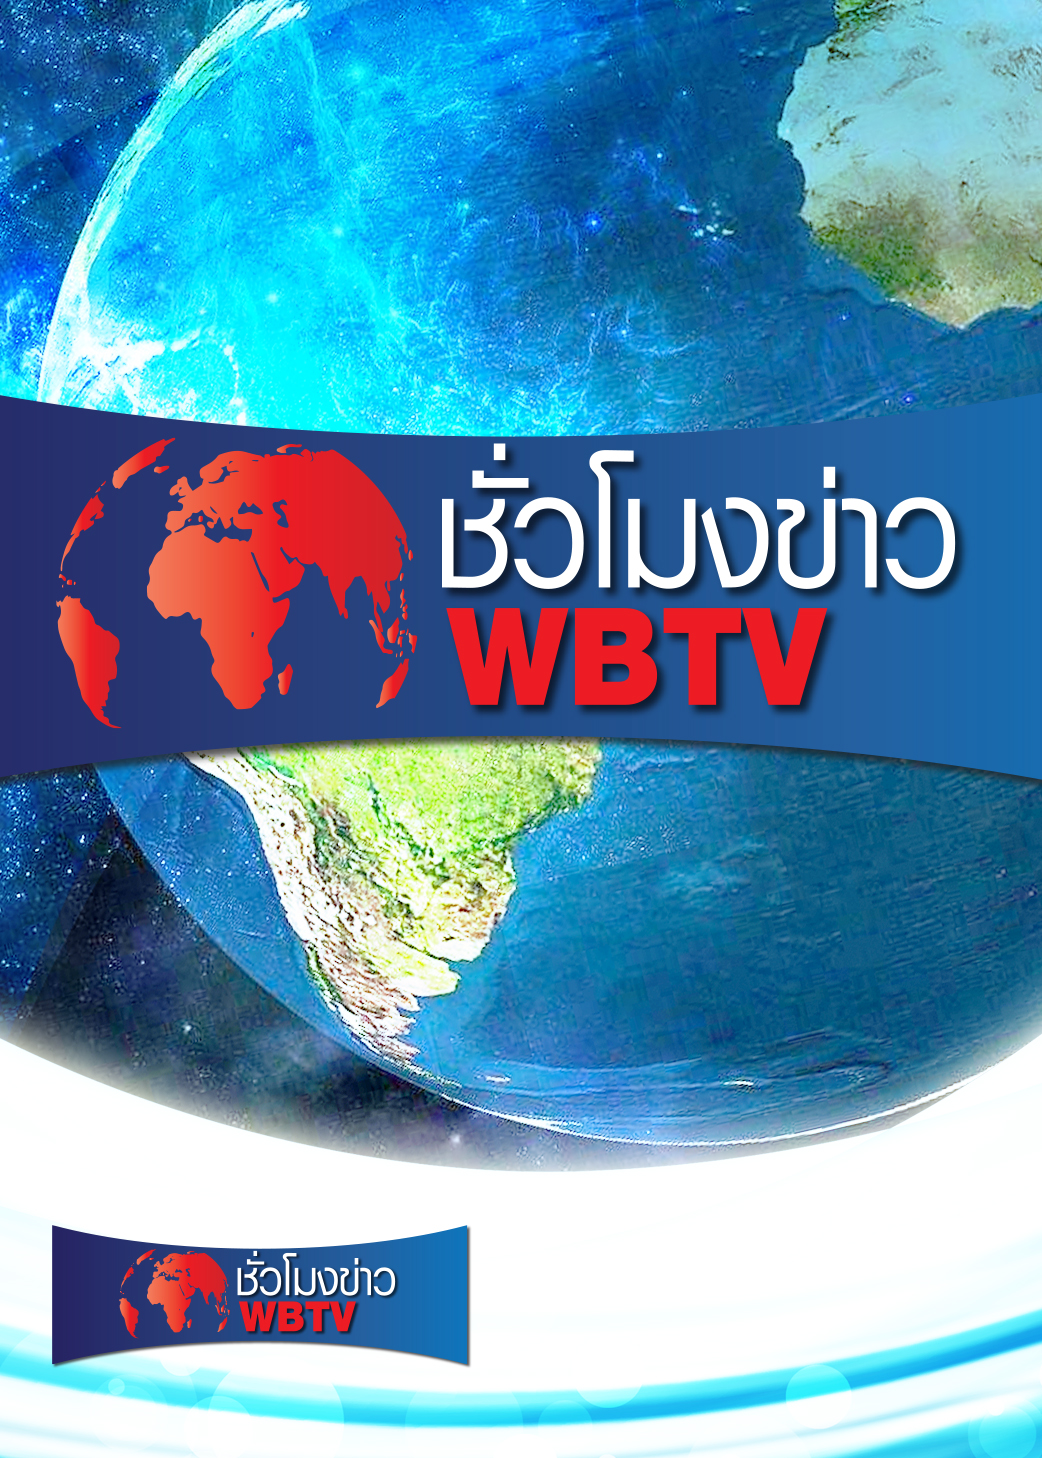 ชั่วโมงข่าว WBTV | ออกอากาศวันที่ 13 ต.ค. 64